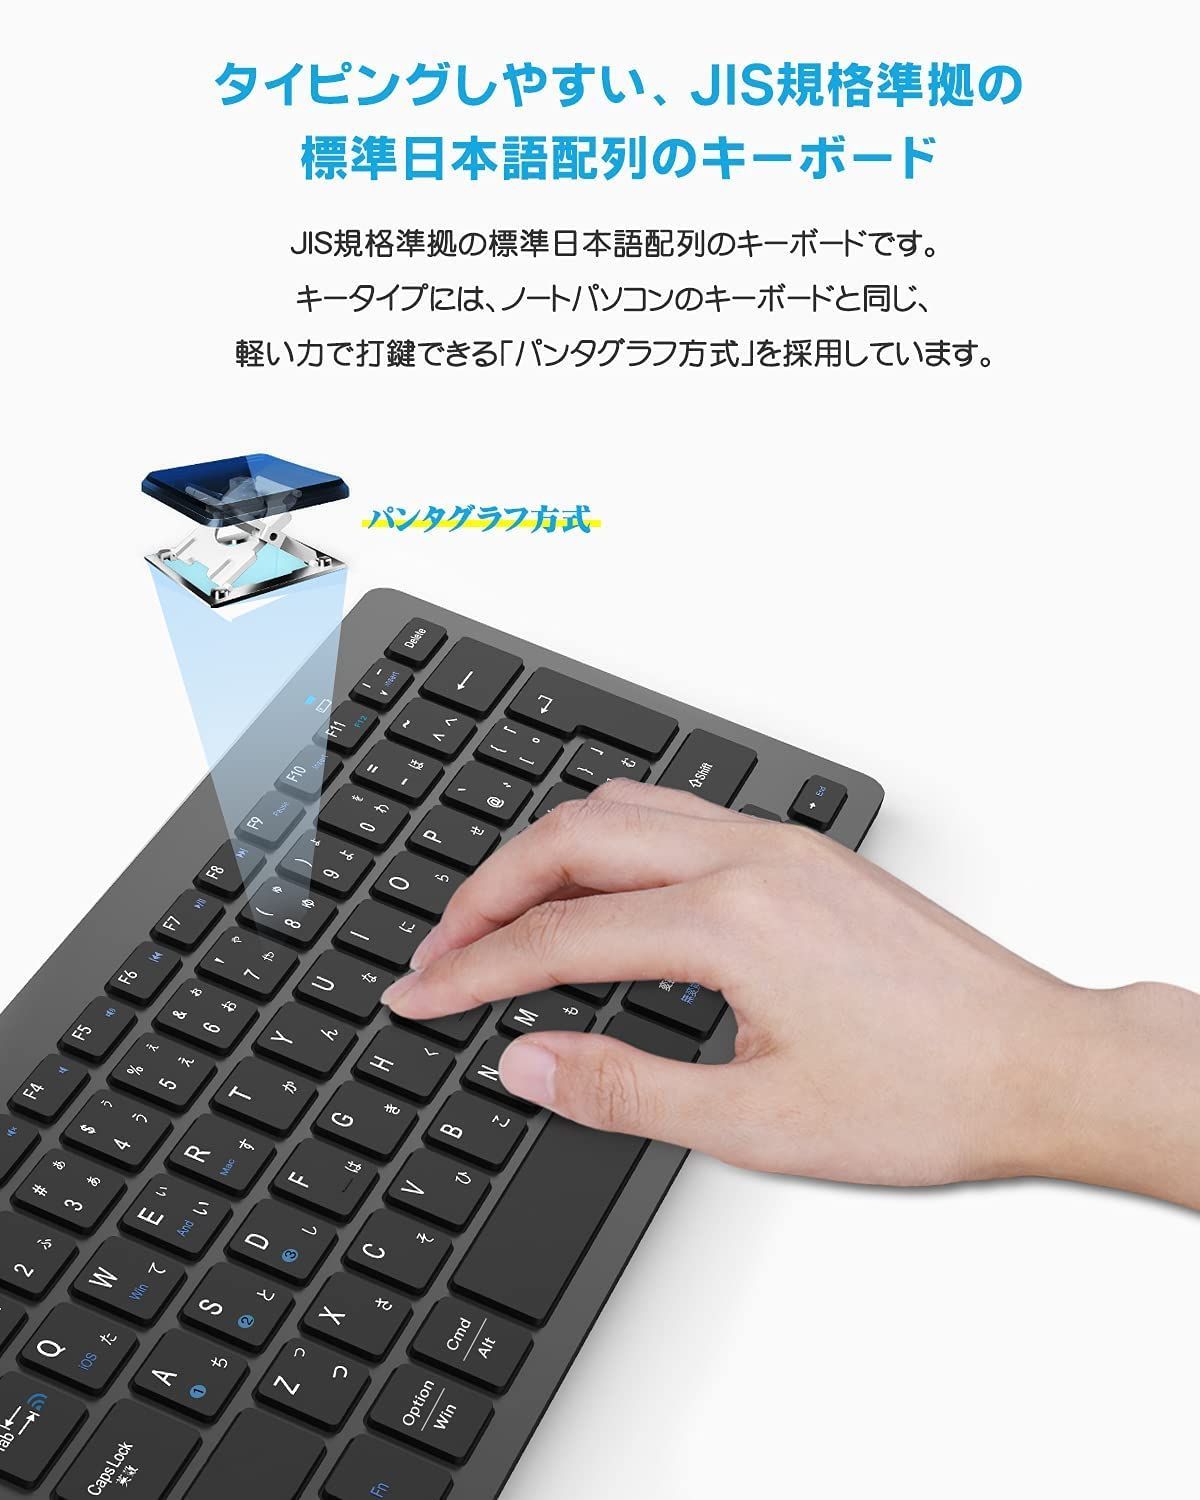 数量限定】mac多システム対応 Windows iphone android ipad ios パソコン 日本語配列 スマホ JIS基準 タブレット  キーボード 三つデバイス自由に切替え キーボード 軽量 小型 超薄型 bluetooth 日本語説明書 ワイ - メルカリ